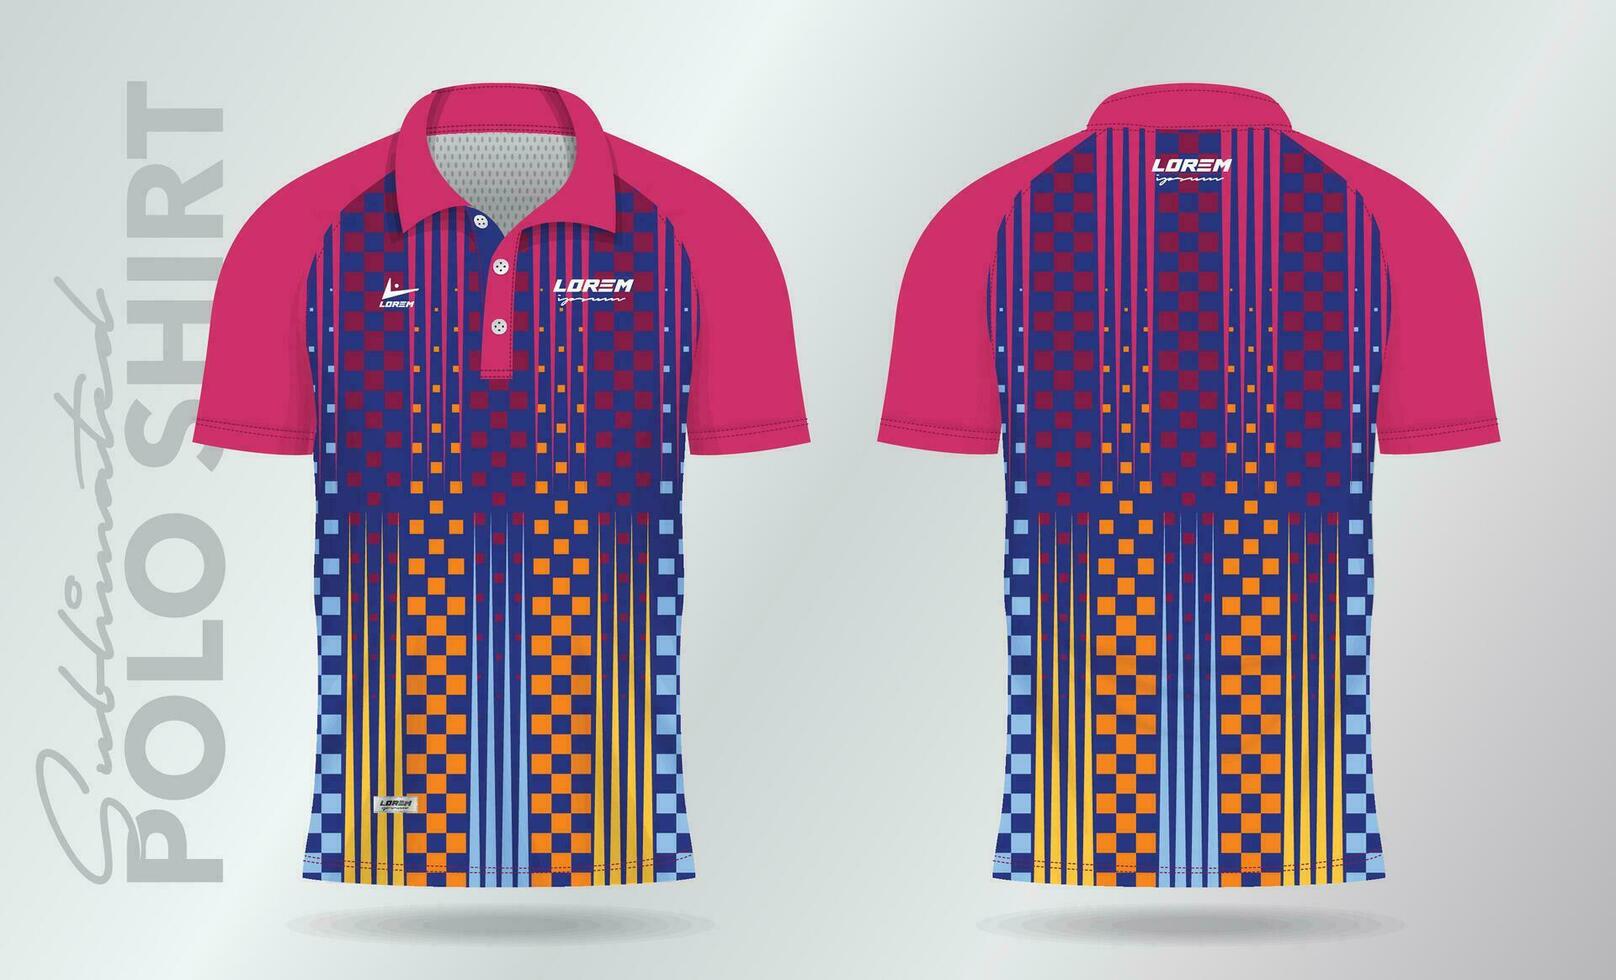 colorida sublimação pólo camisa brincar modelo Projeto para badminton camisa, tênis, futebol, futebol ou esporte uniforme vetor